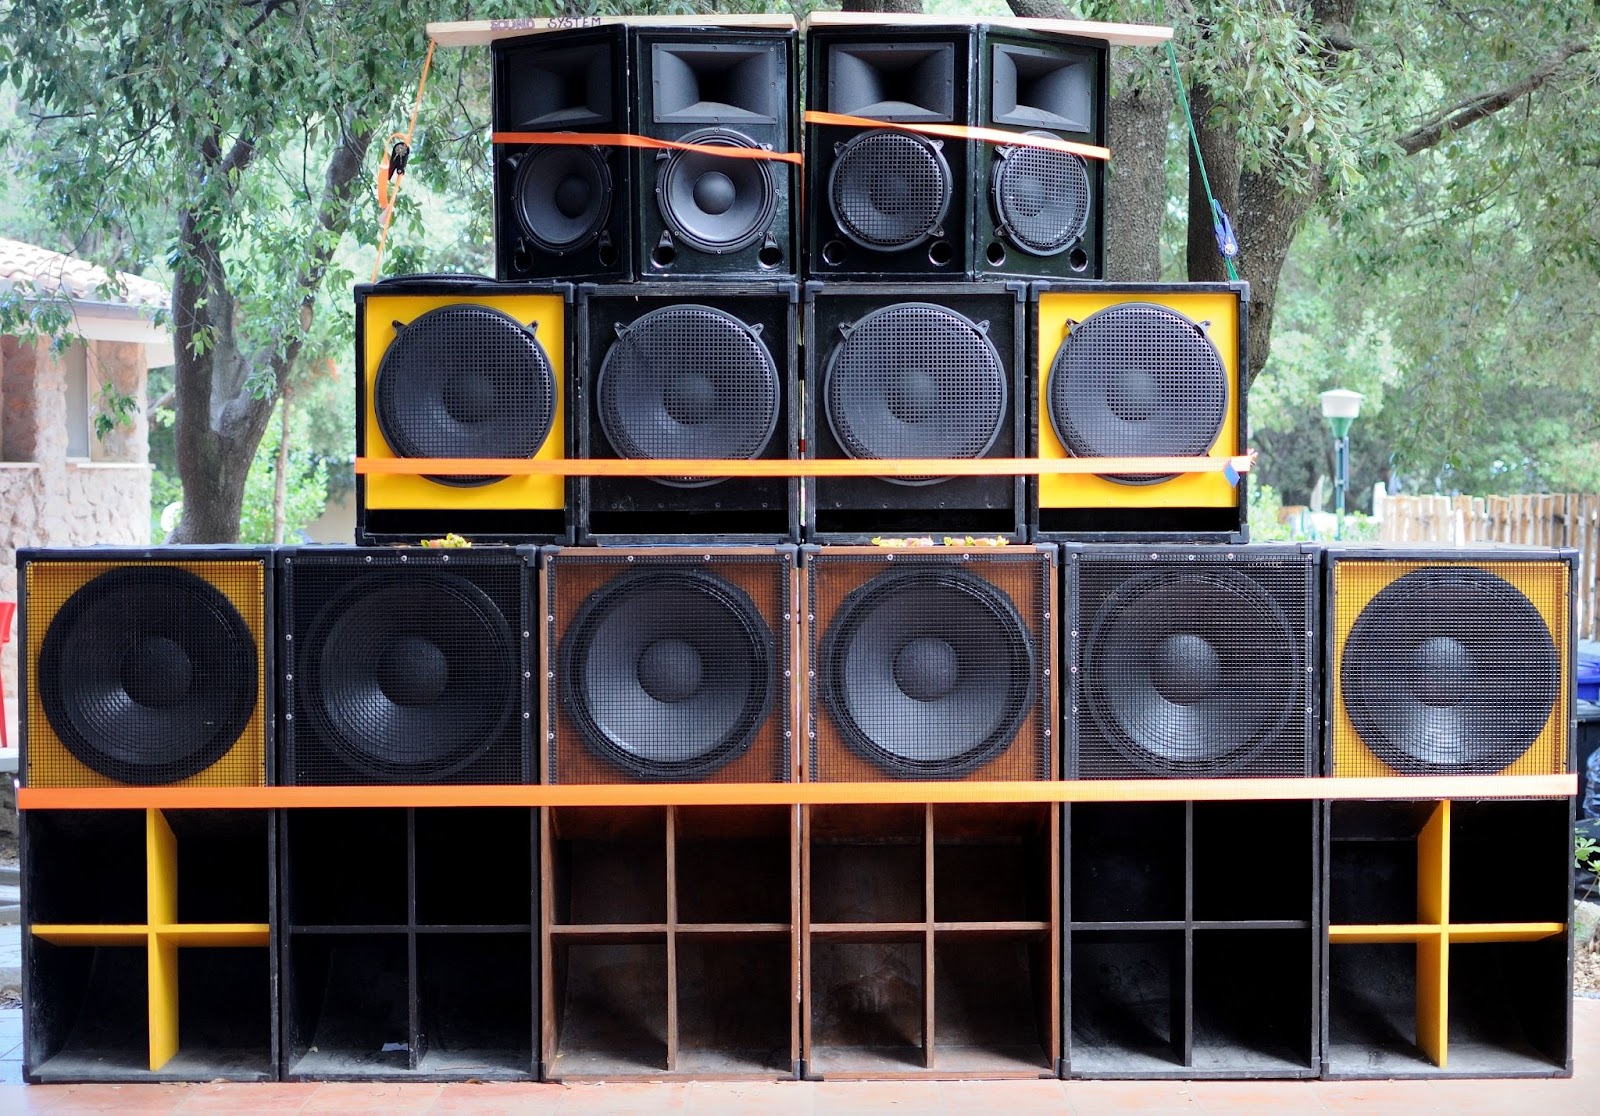 Caixas de som grandes, médias e pequenas usadas para montar as radiolas, equipamentos sonoros presentes nas festas de reggae maranhenses.